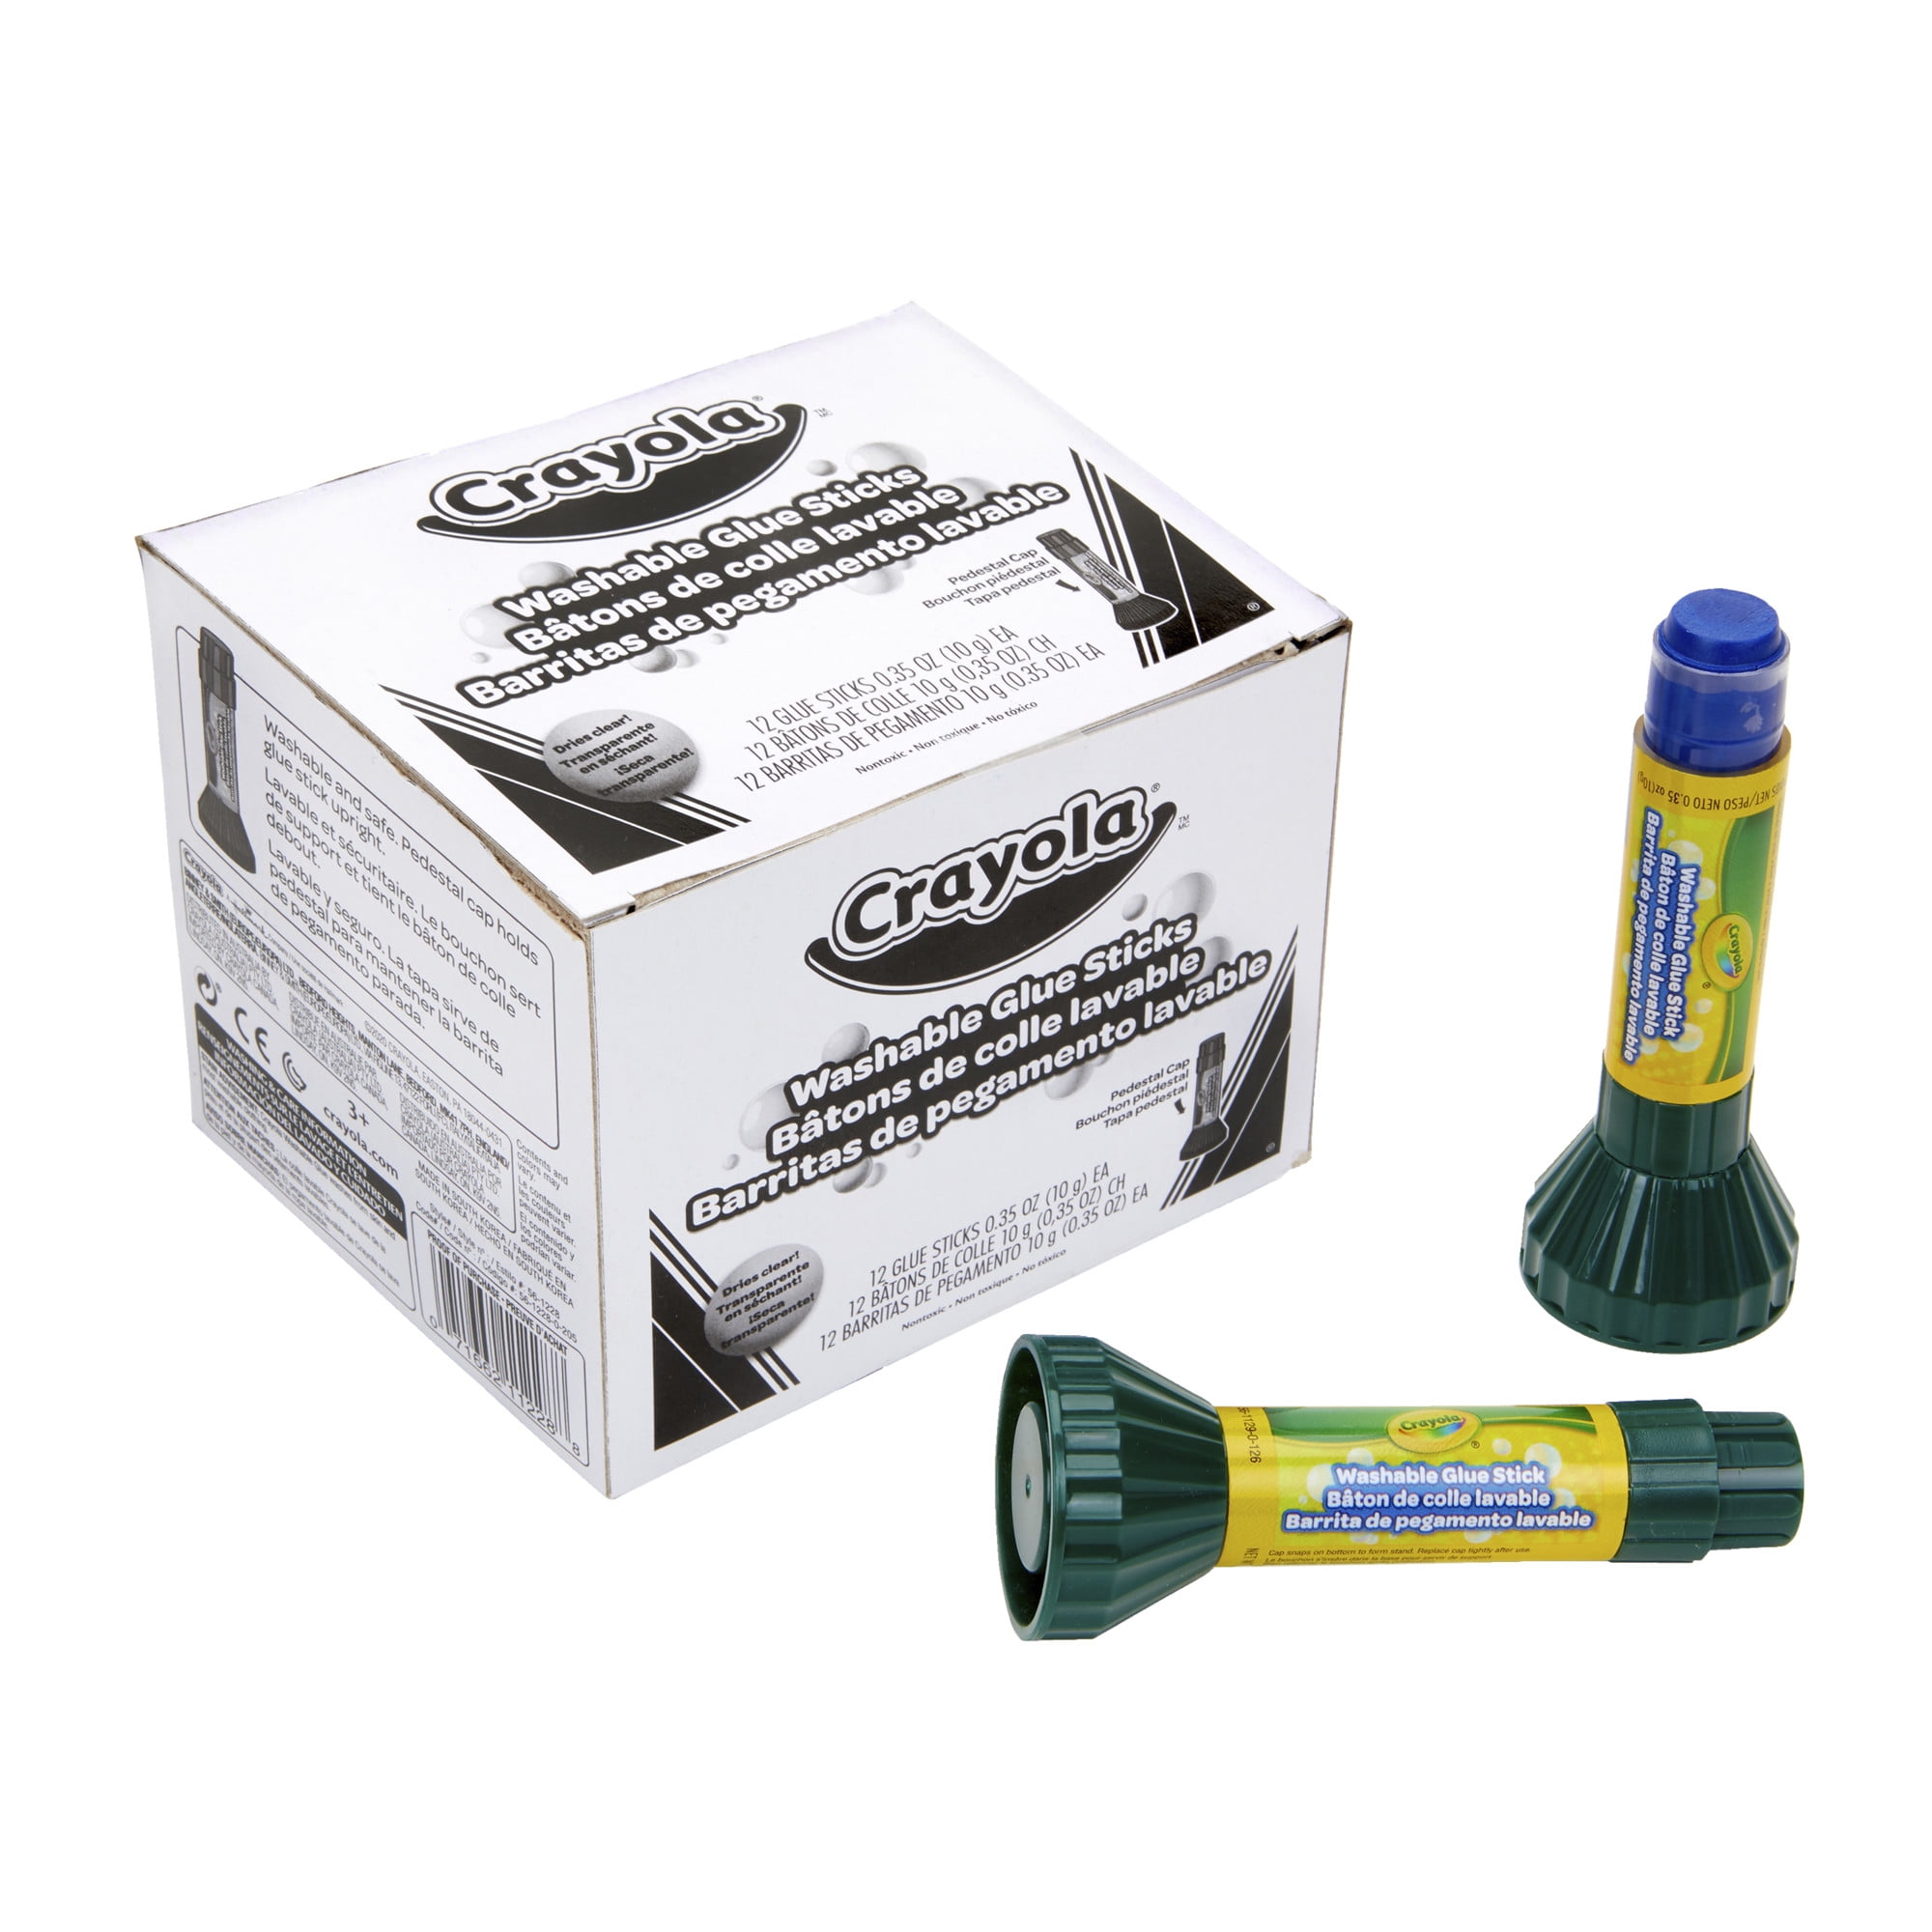 Crayola Glue, School - 4 lf oz (118 ml)